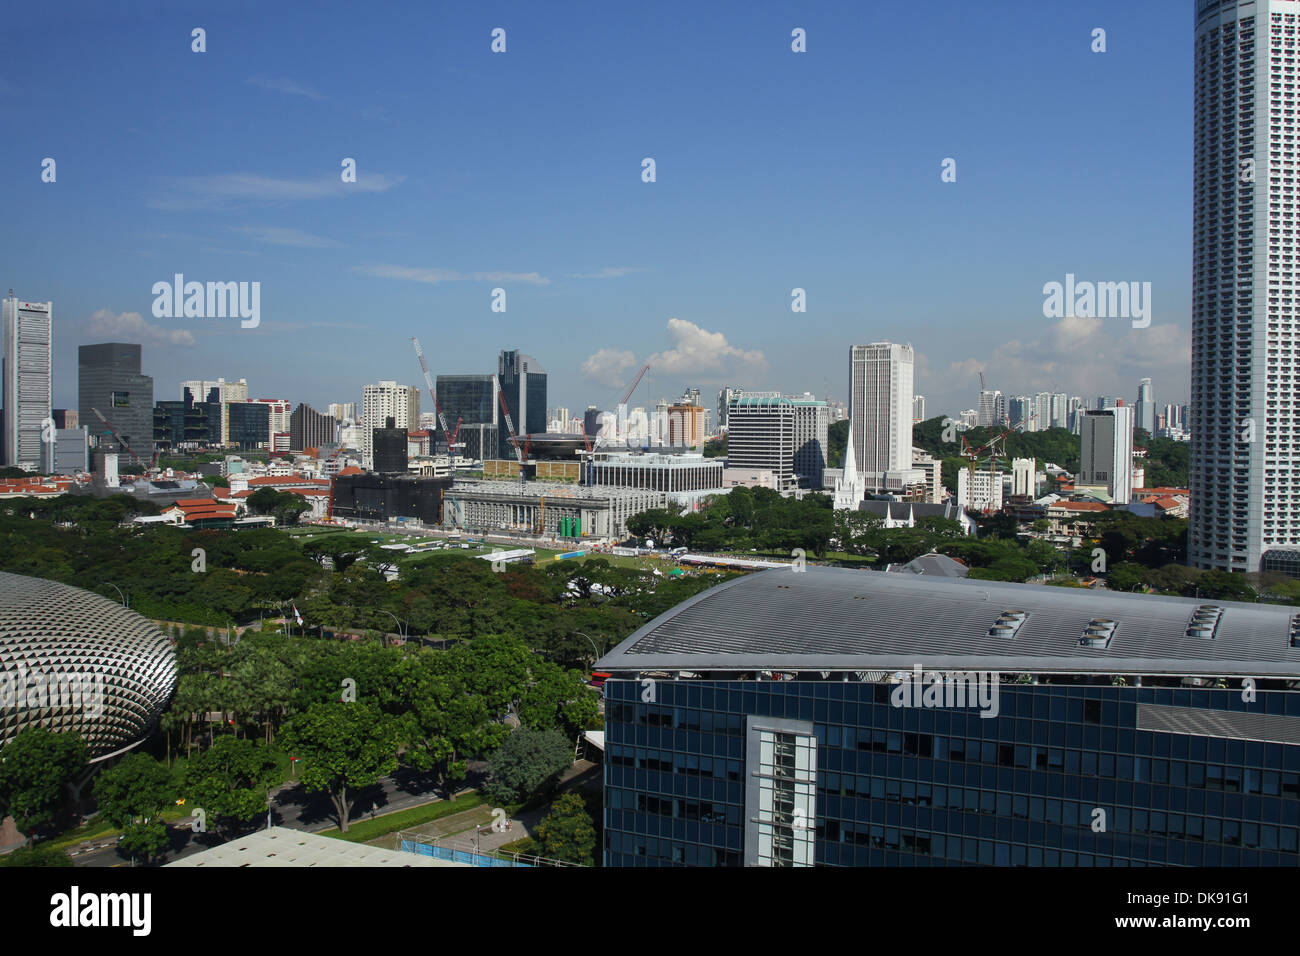 Singapur Stadtbild. Blick vom Marina Mandarin Hotel. Singapur. Supreme Court und Rathaus Gebäude in Bildmitte. Stockfoto